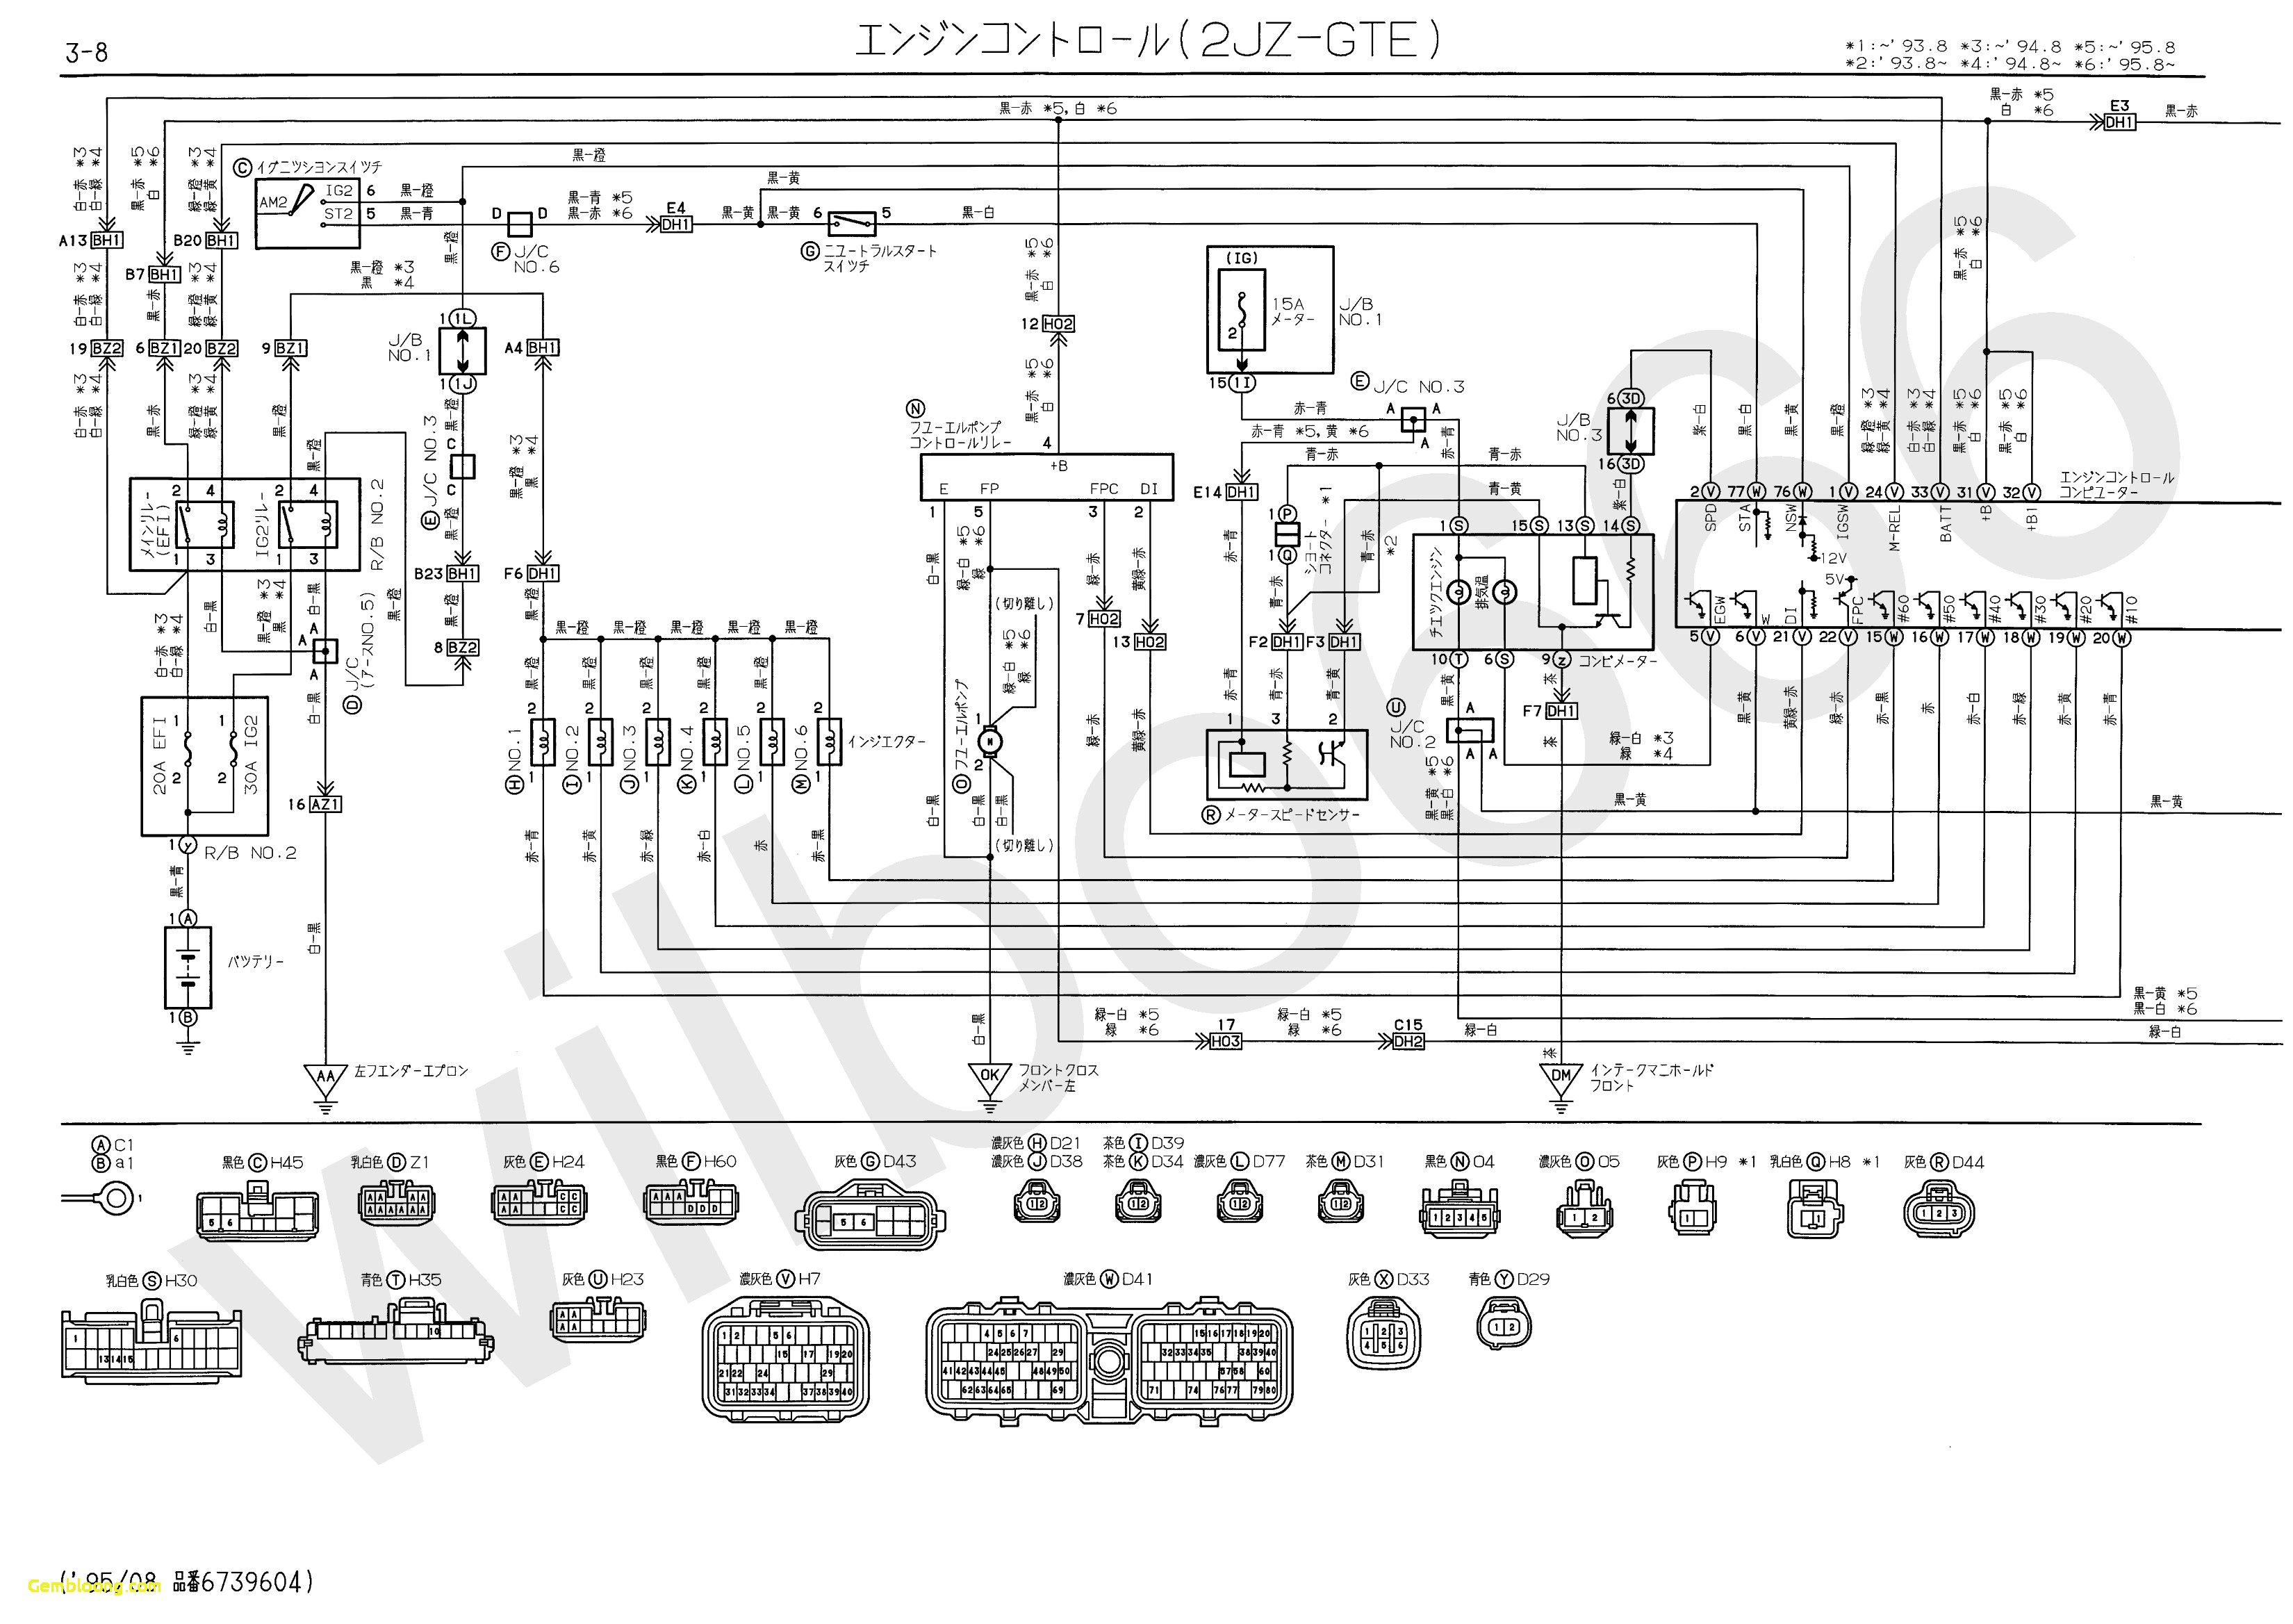 free bmw e36 dme wiring diagram wilbo666 2jz gte jzs147 aristo engine wiring